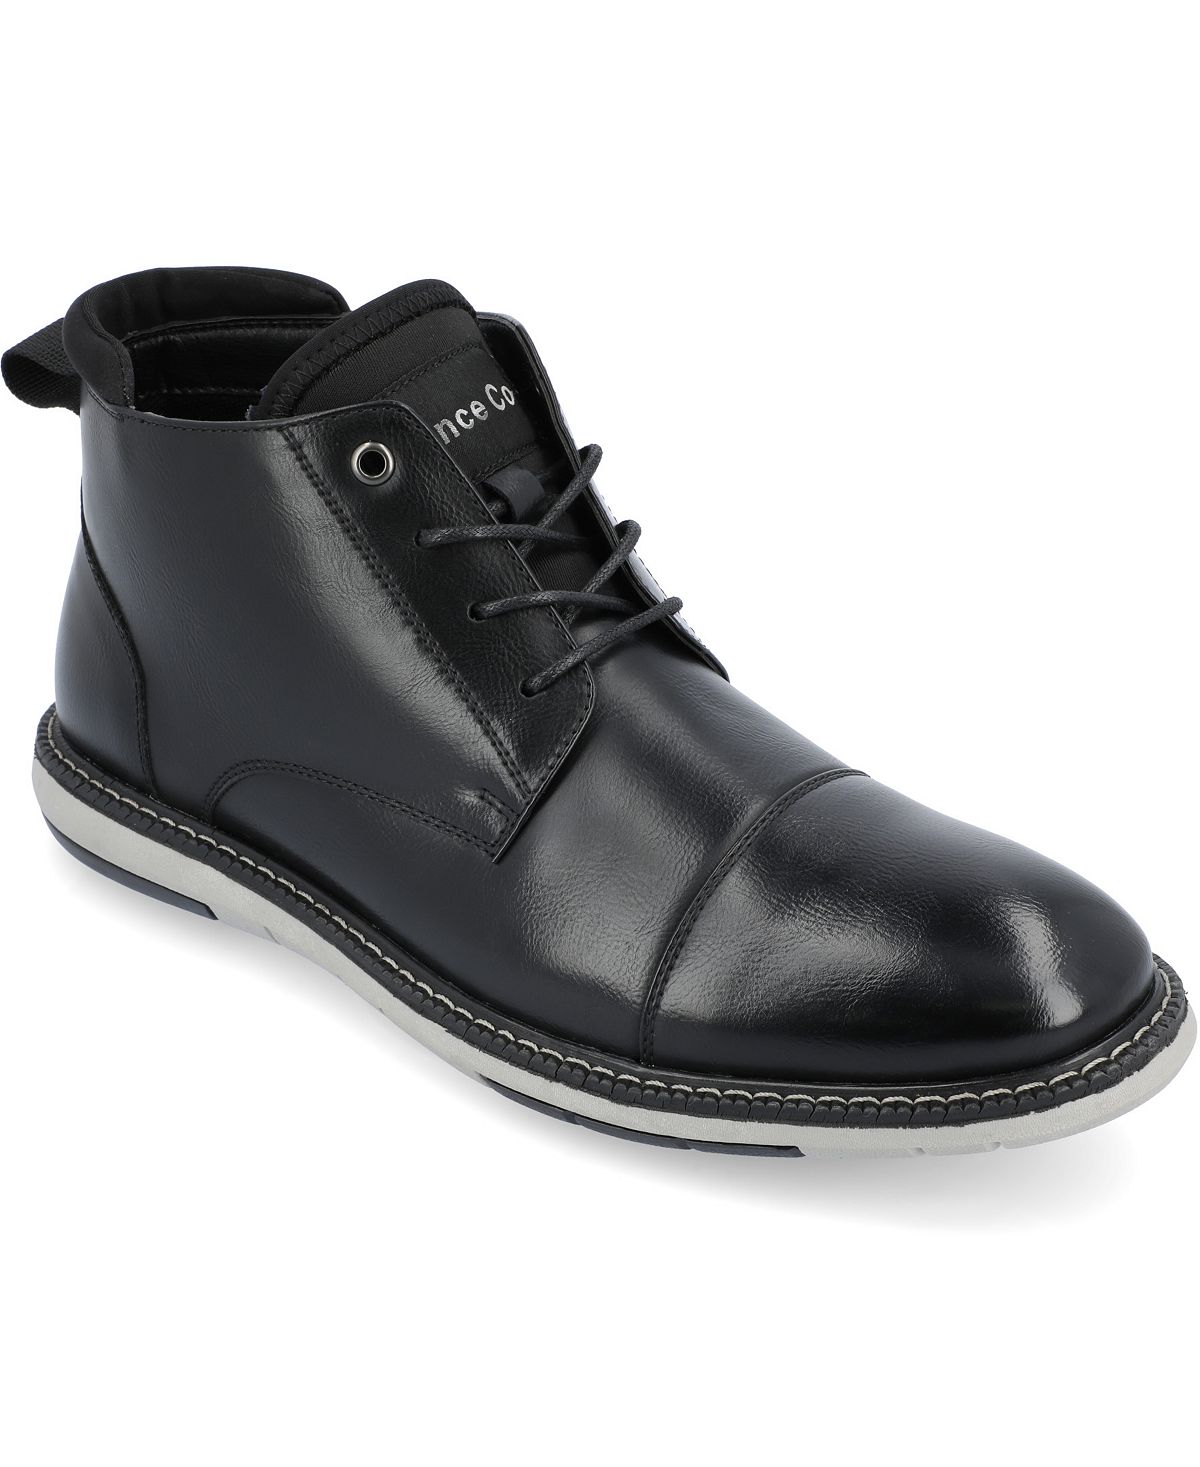 Мужские ботинки Chukka Redford Tru Comfort из пеноматериала со шнуровкой и носком Vance Co.